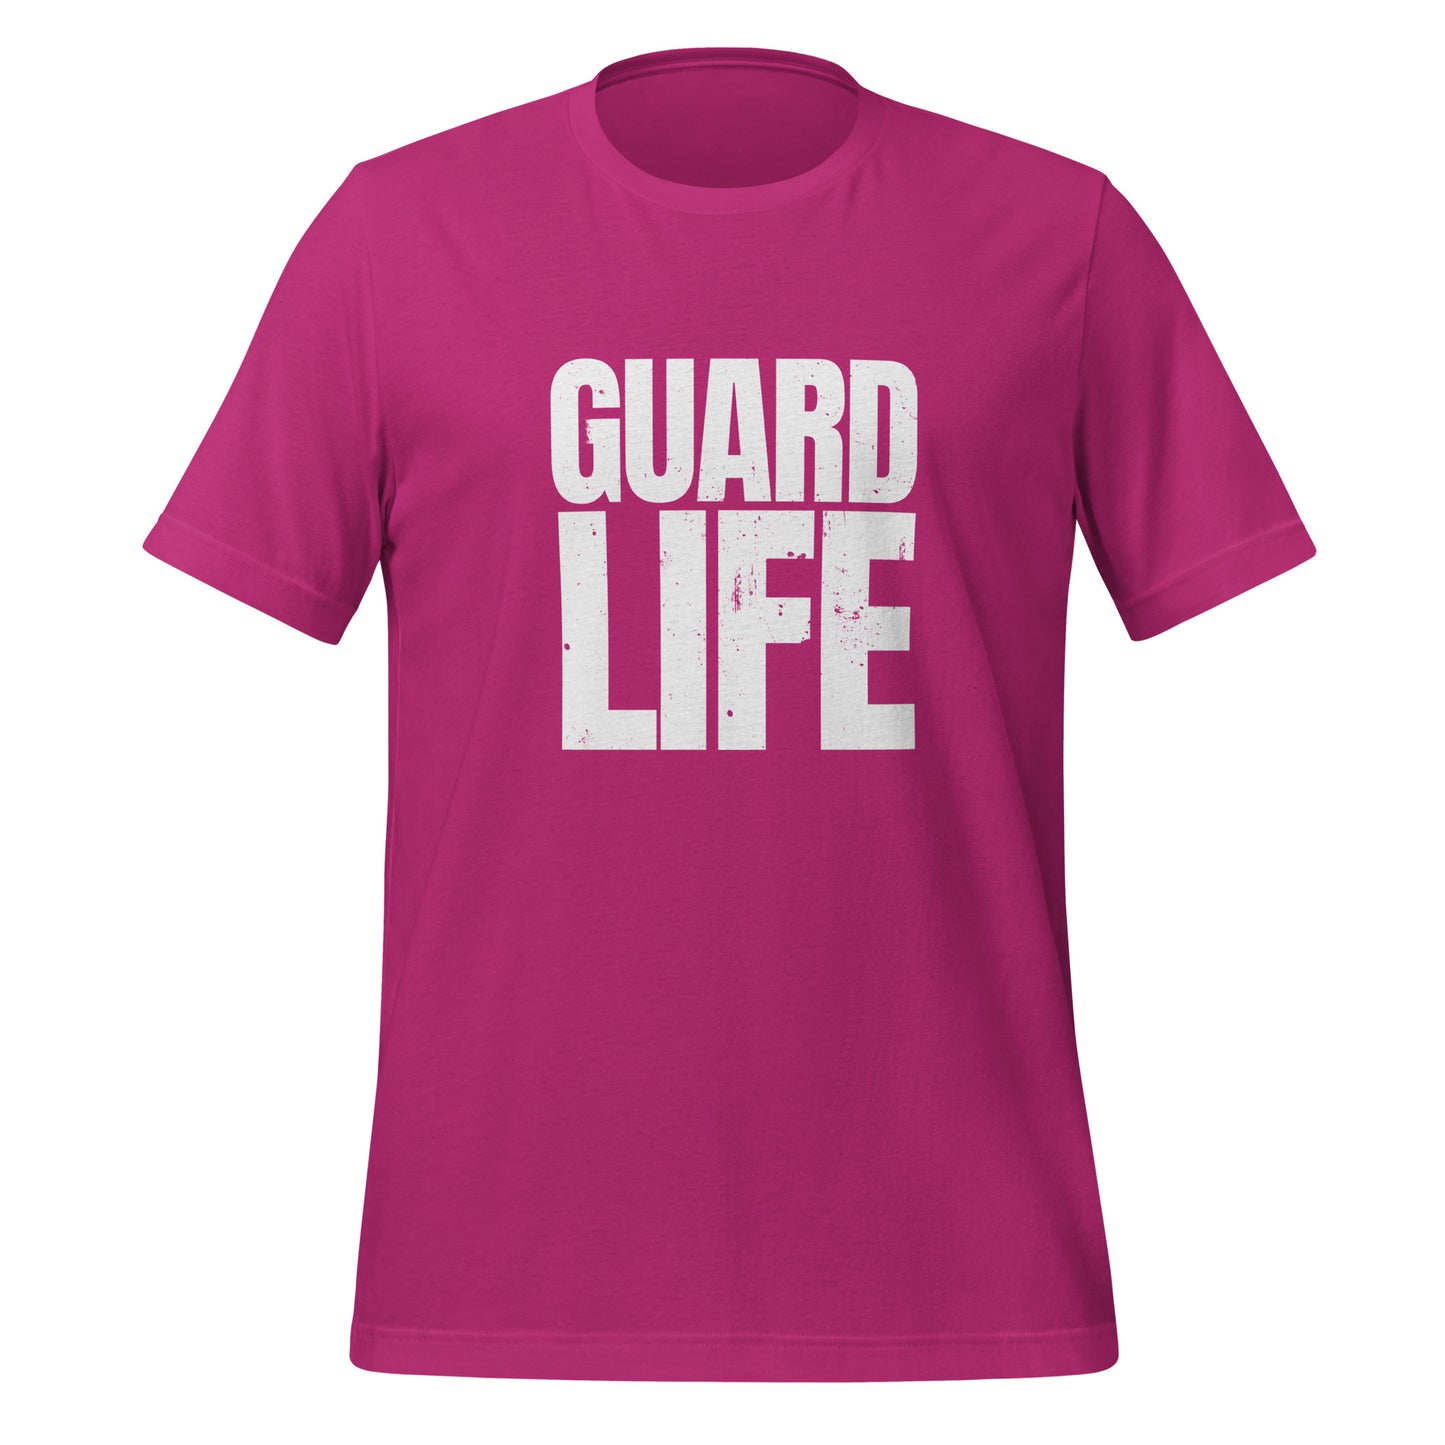 GUARD LIFE (Color Guard) Adult T-shirt